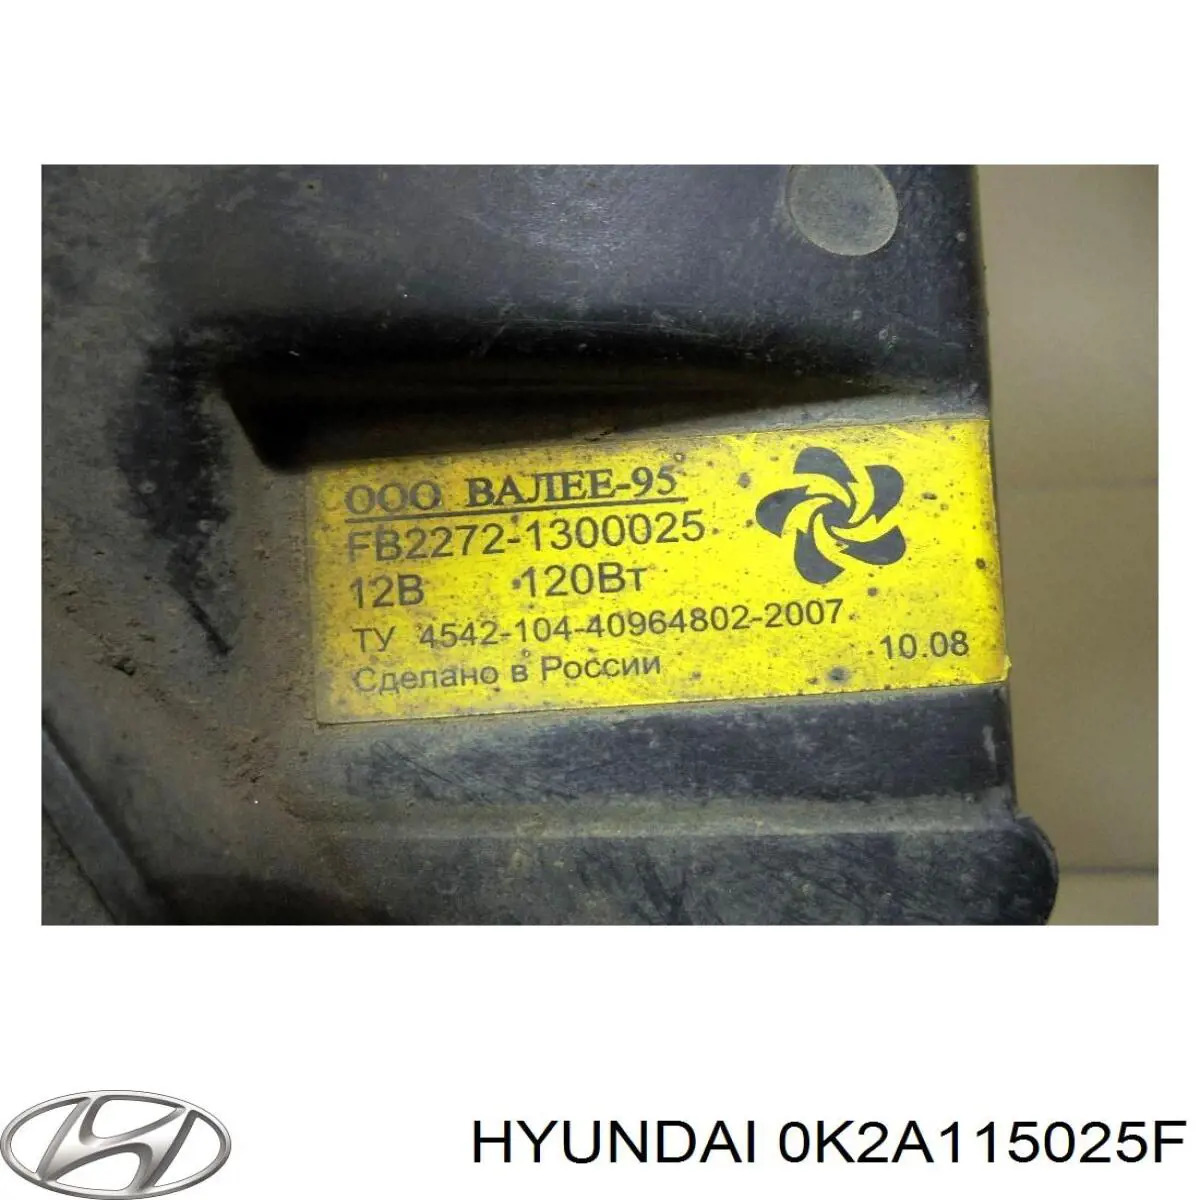 0K2A115025A Hyundai/Kia difusor de radiador, ventilador de refrigeración, condensador del aire acondicionado, completo con motor y rodete